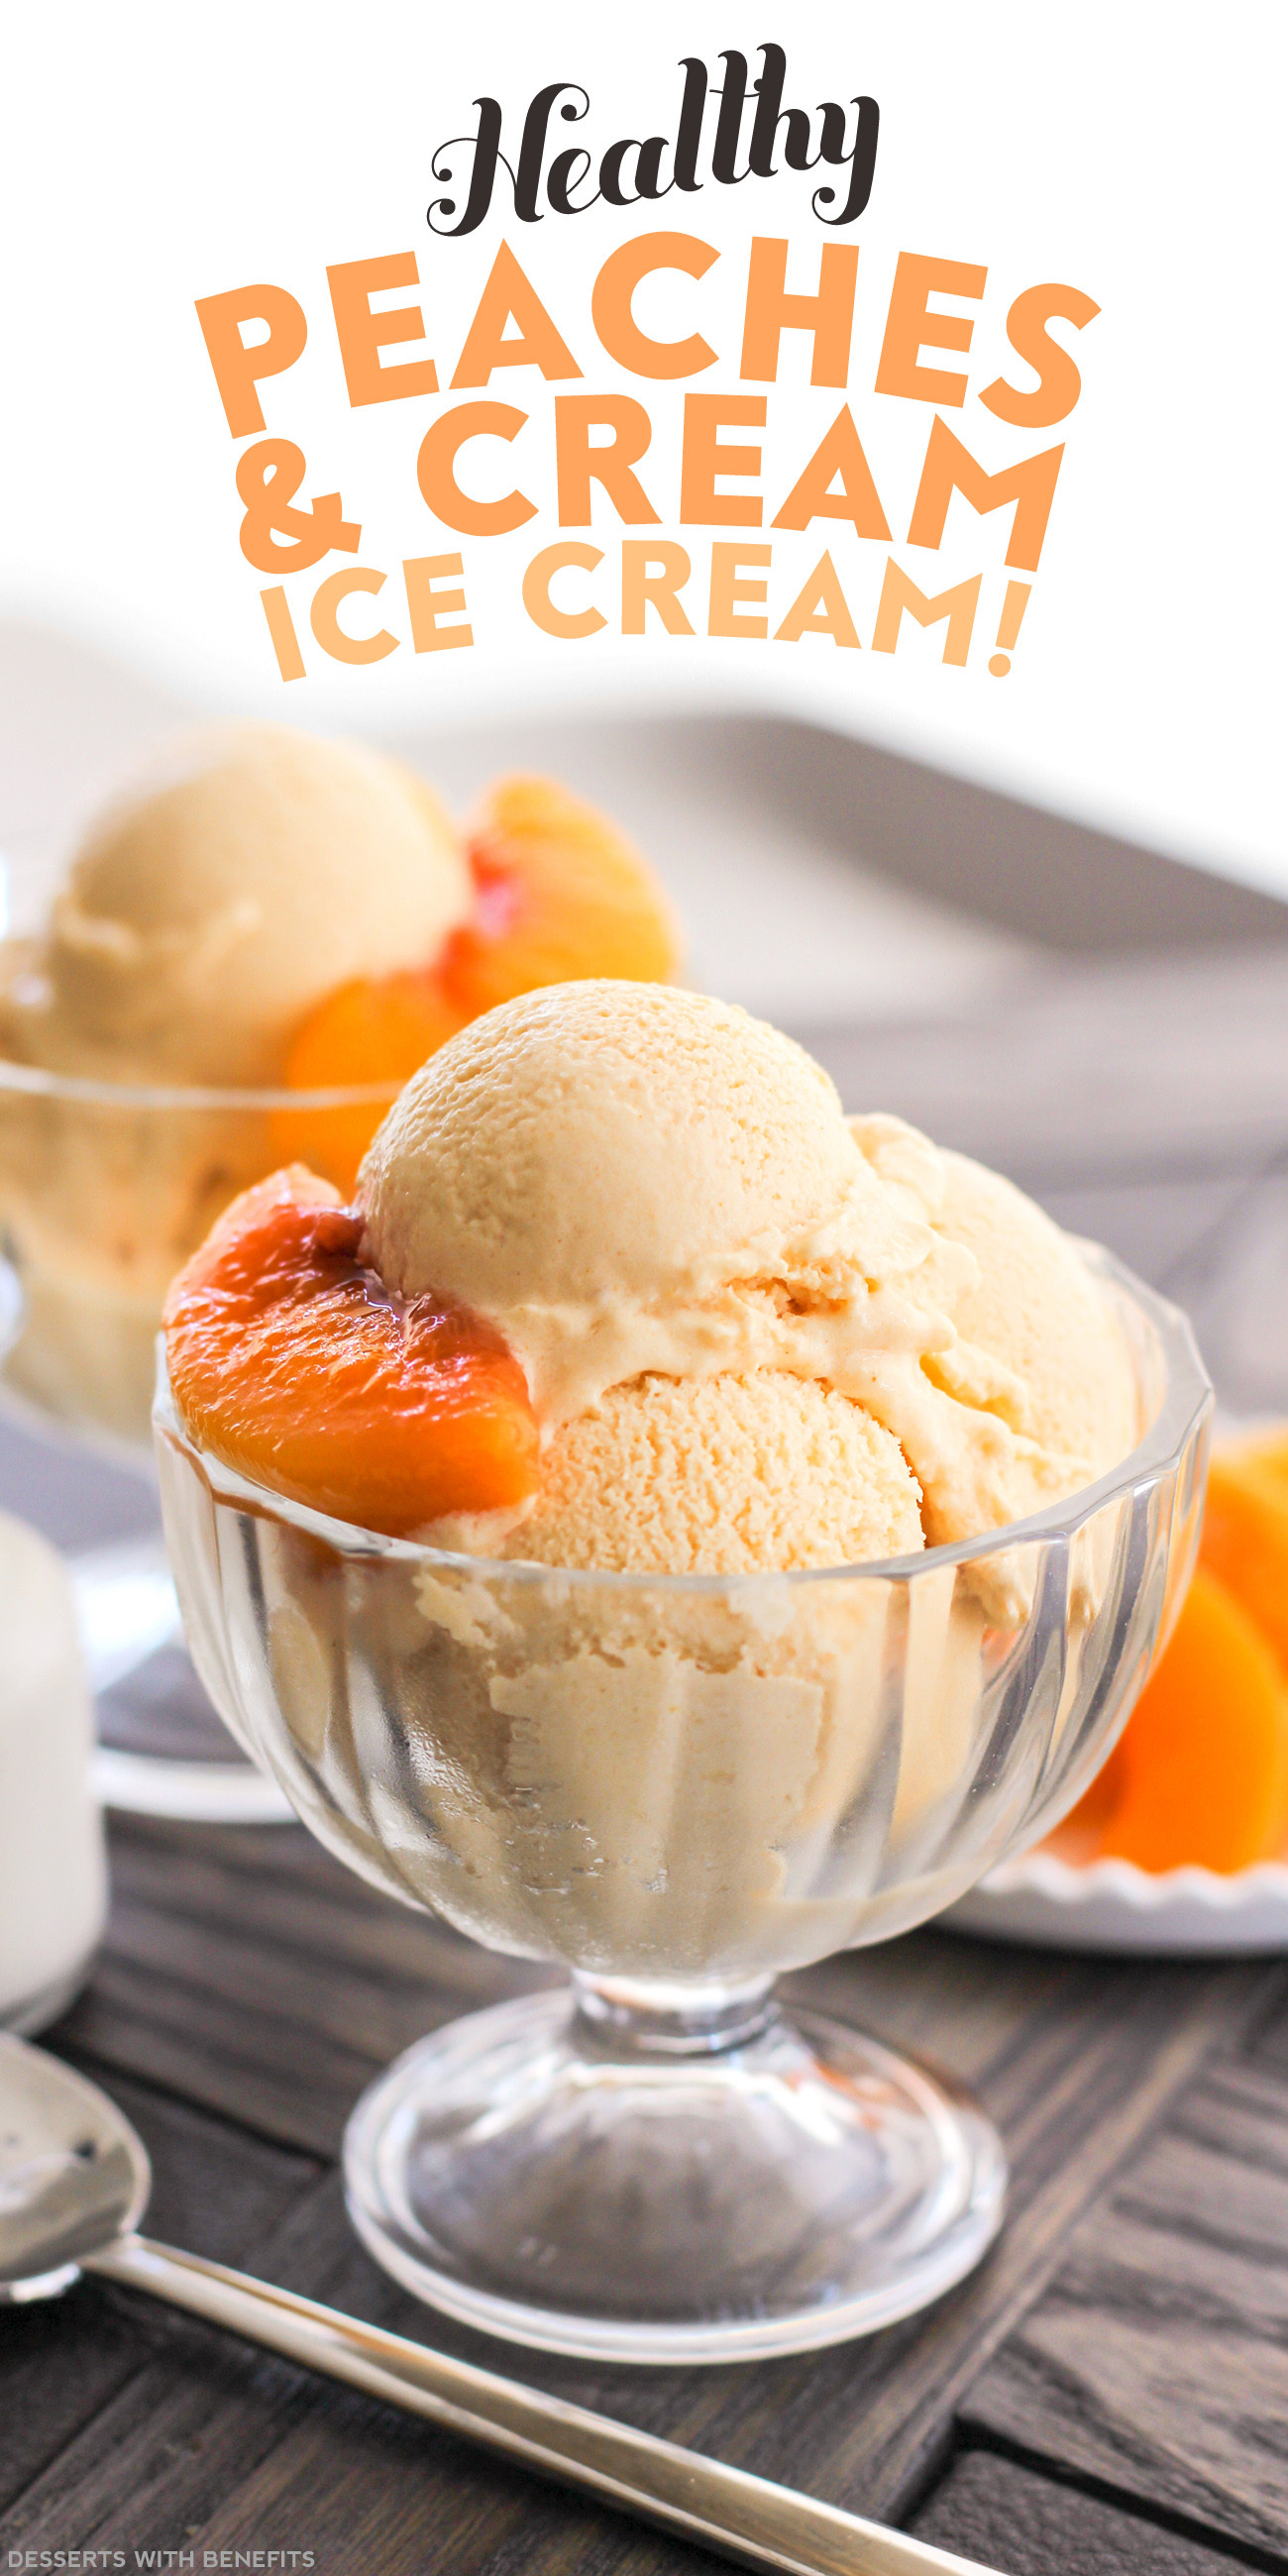 Healthy Peach Desserts
 Healthy Peaches and Cream Ice Cream Recipe No Sugar Added